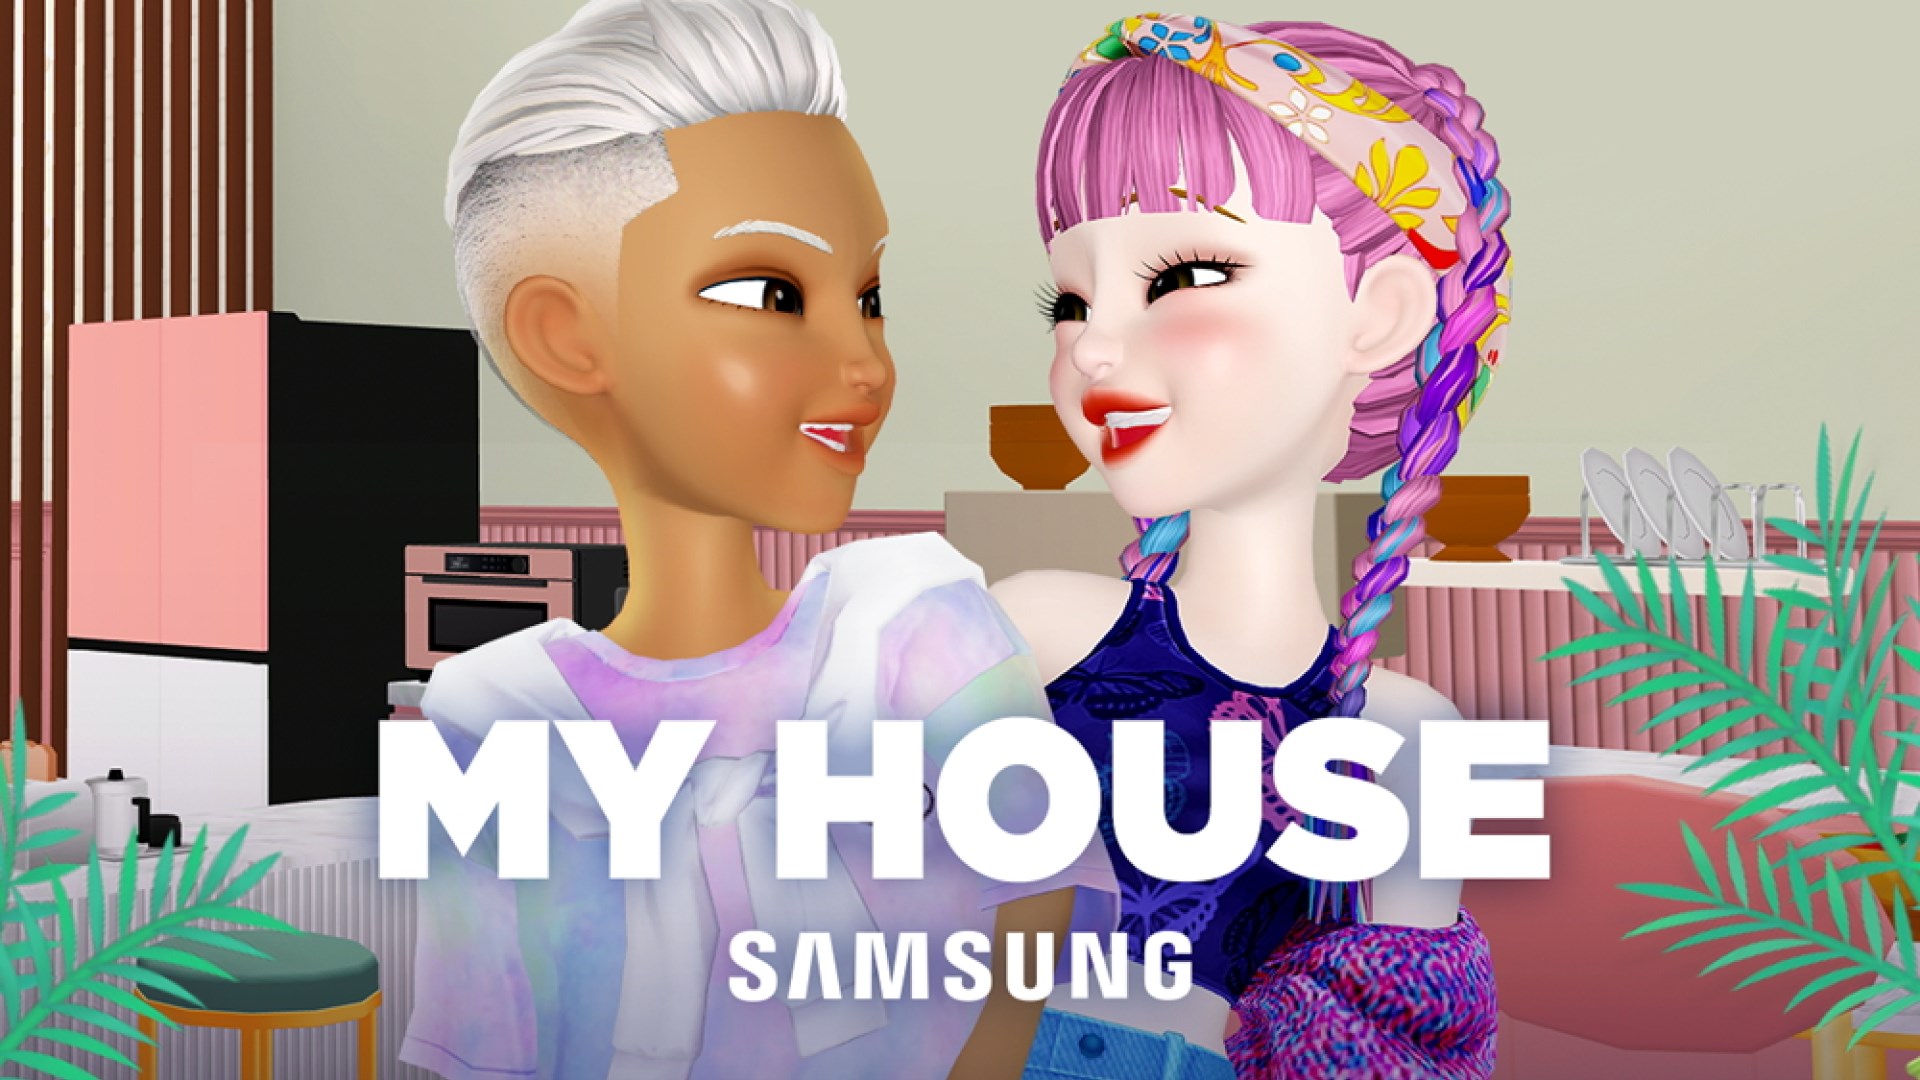 Samsung'un My House metaverse kullanıcı sayısı açıklandı